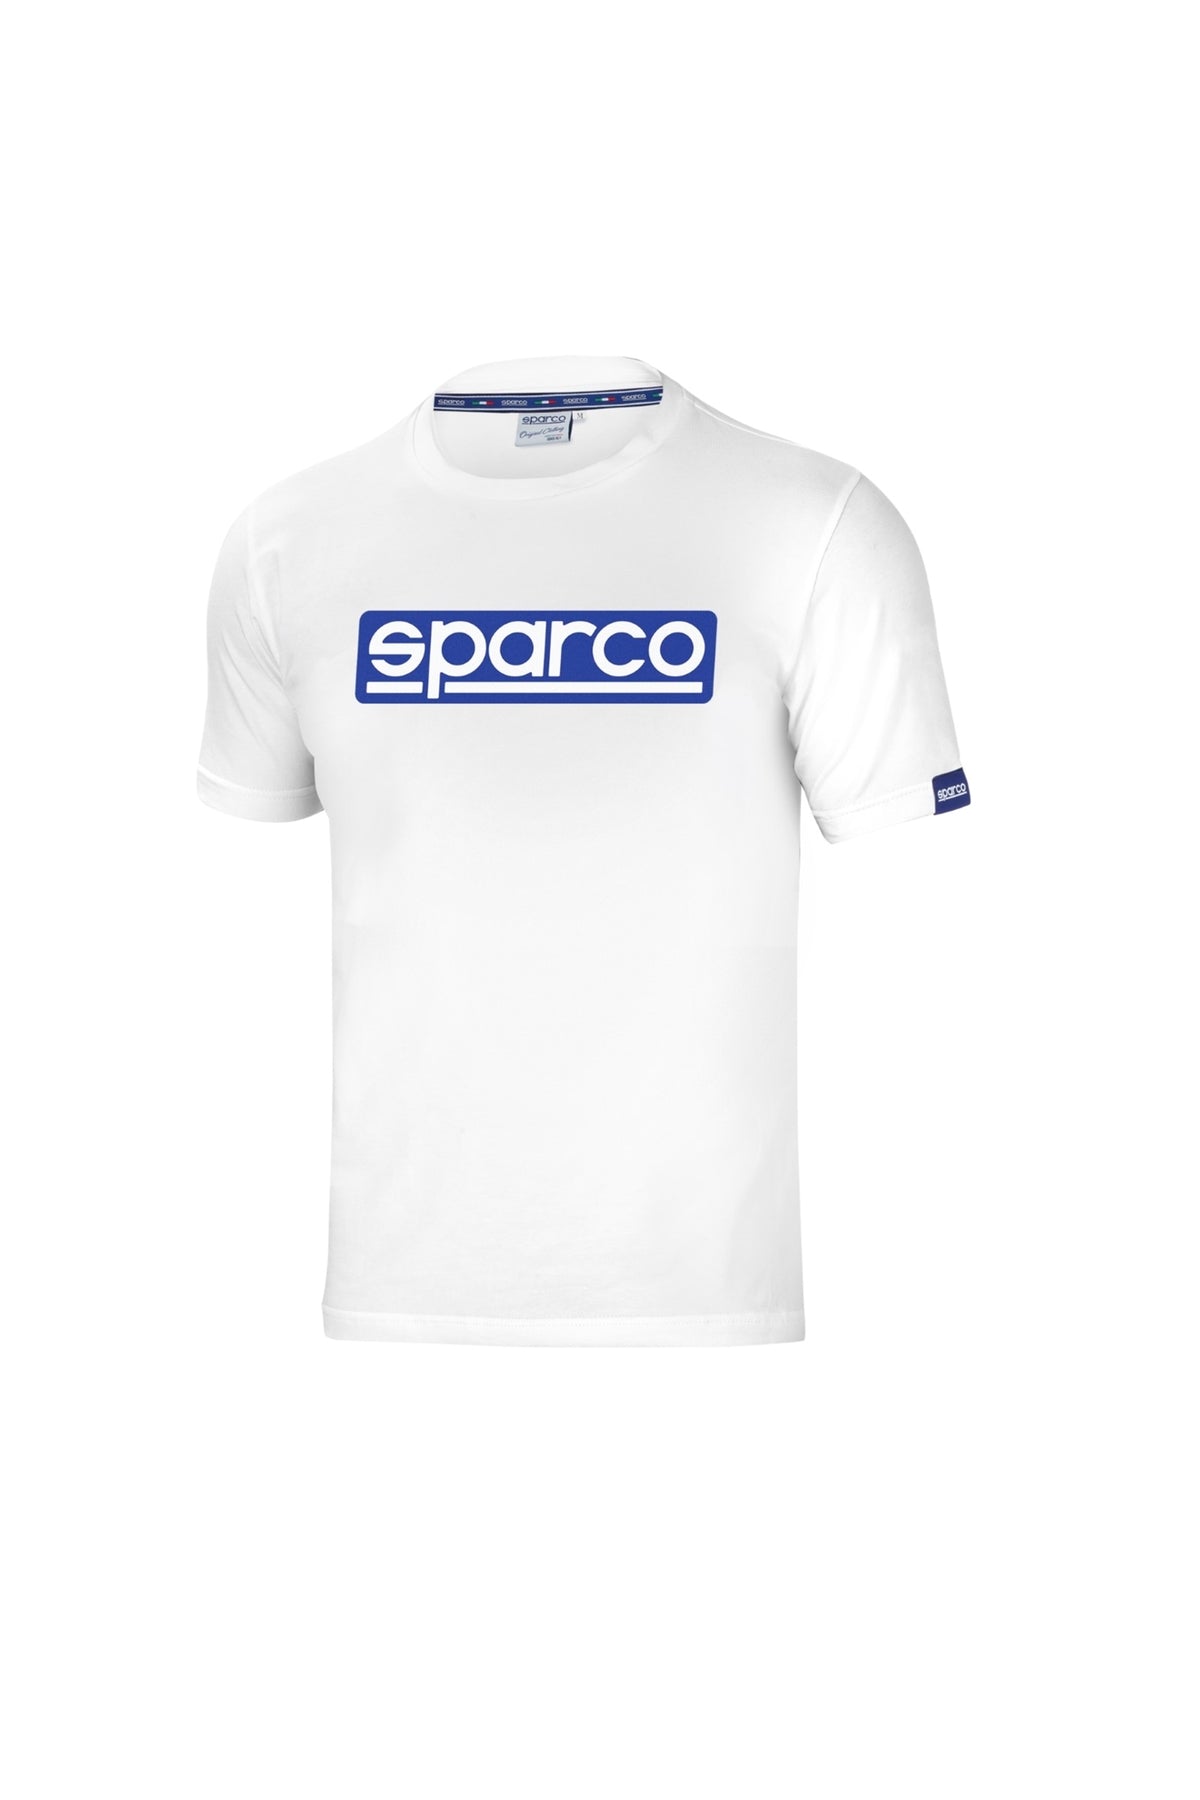 Sparco Original T-shirt